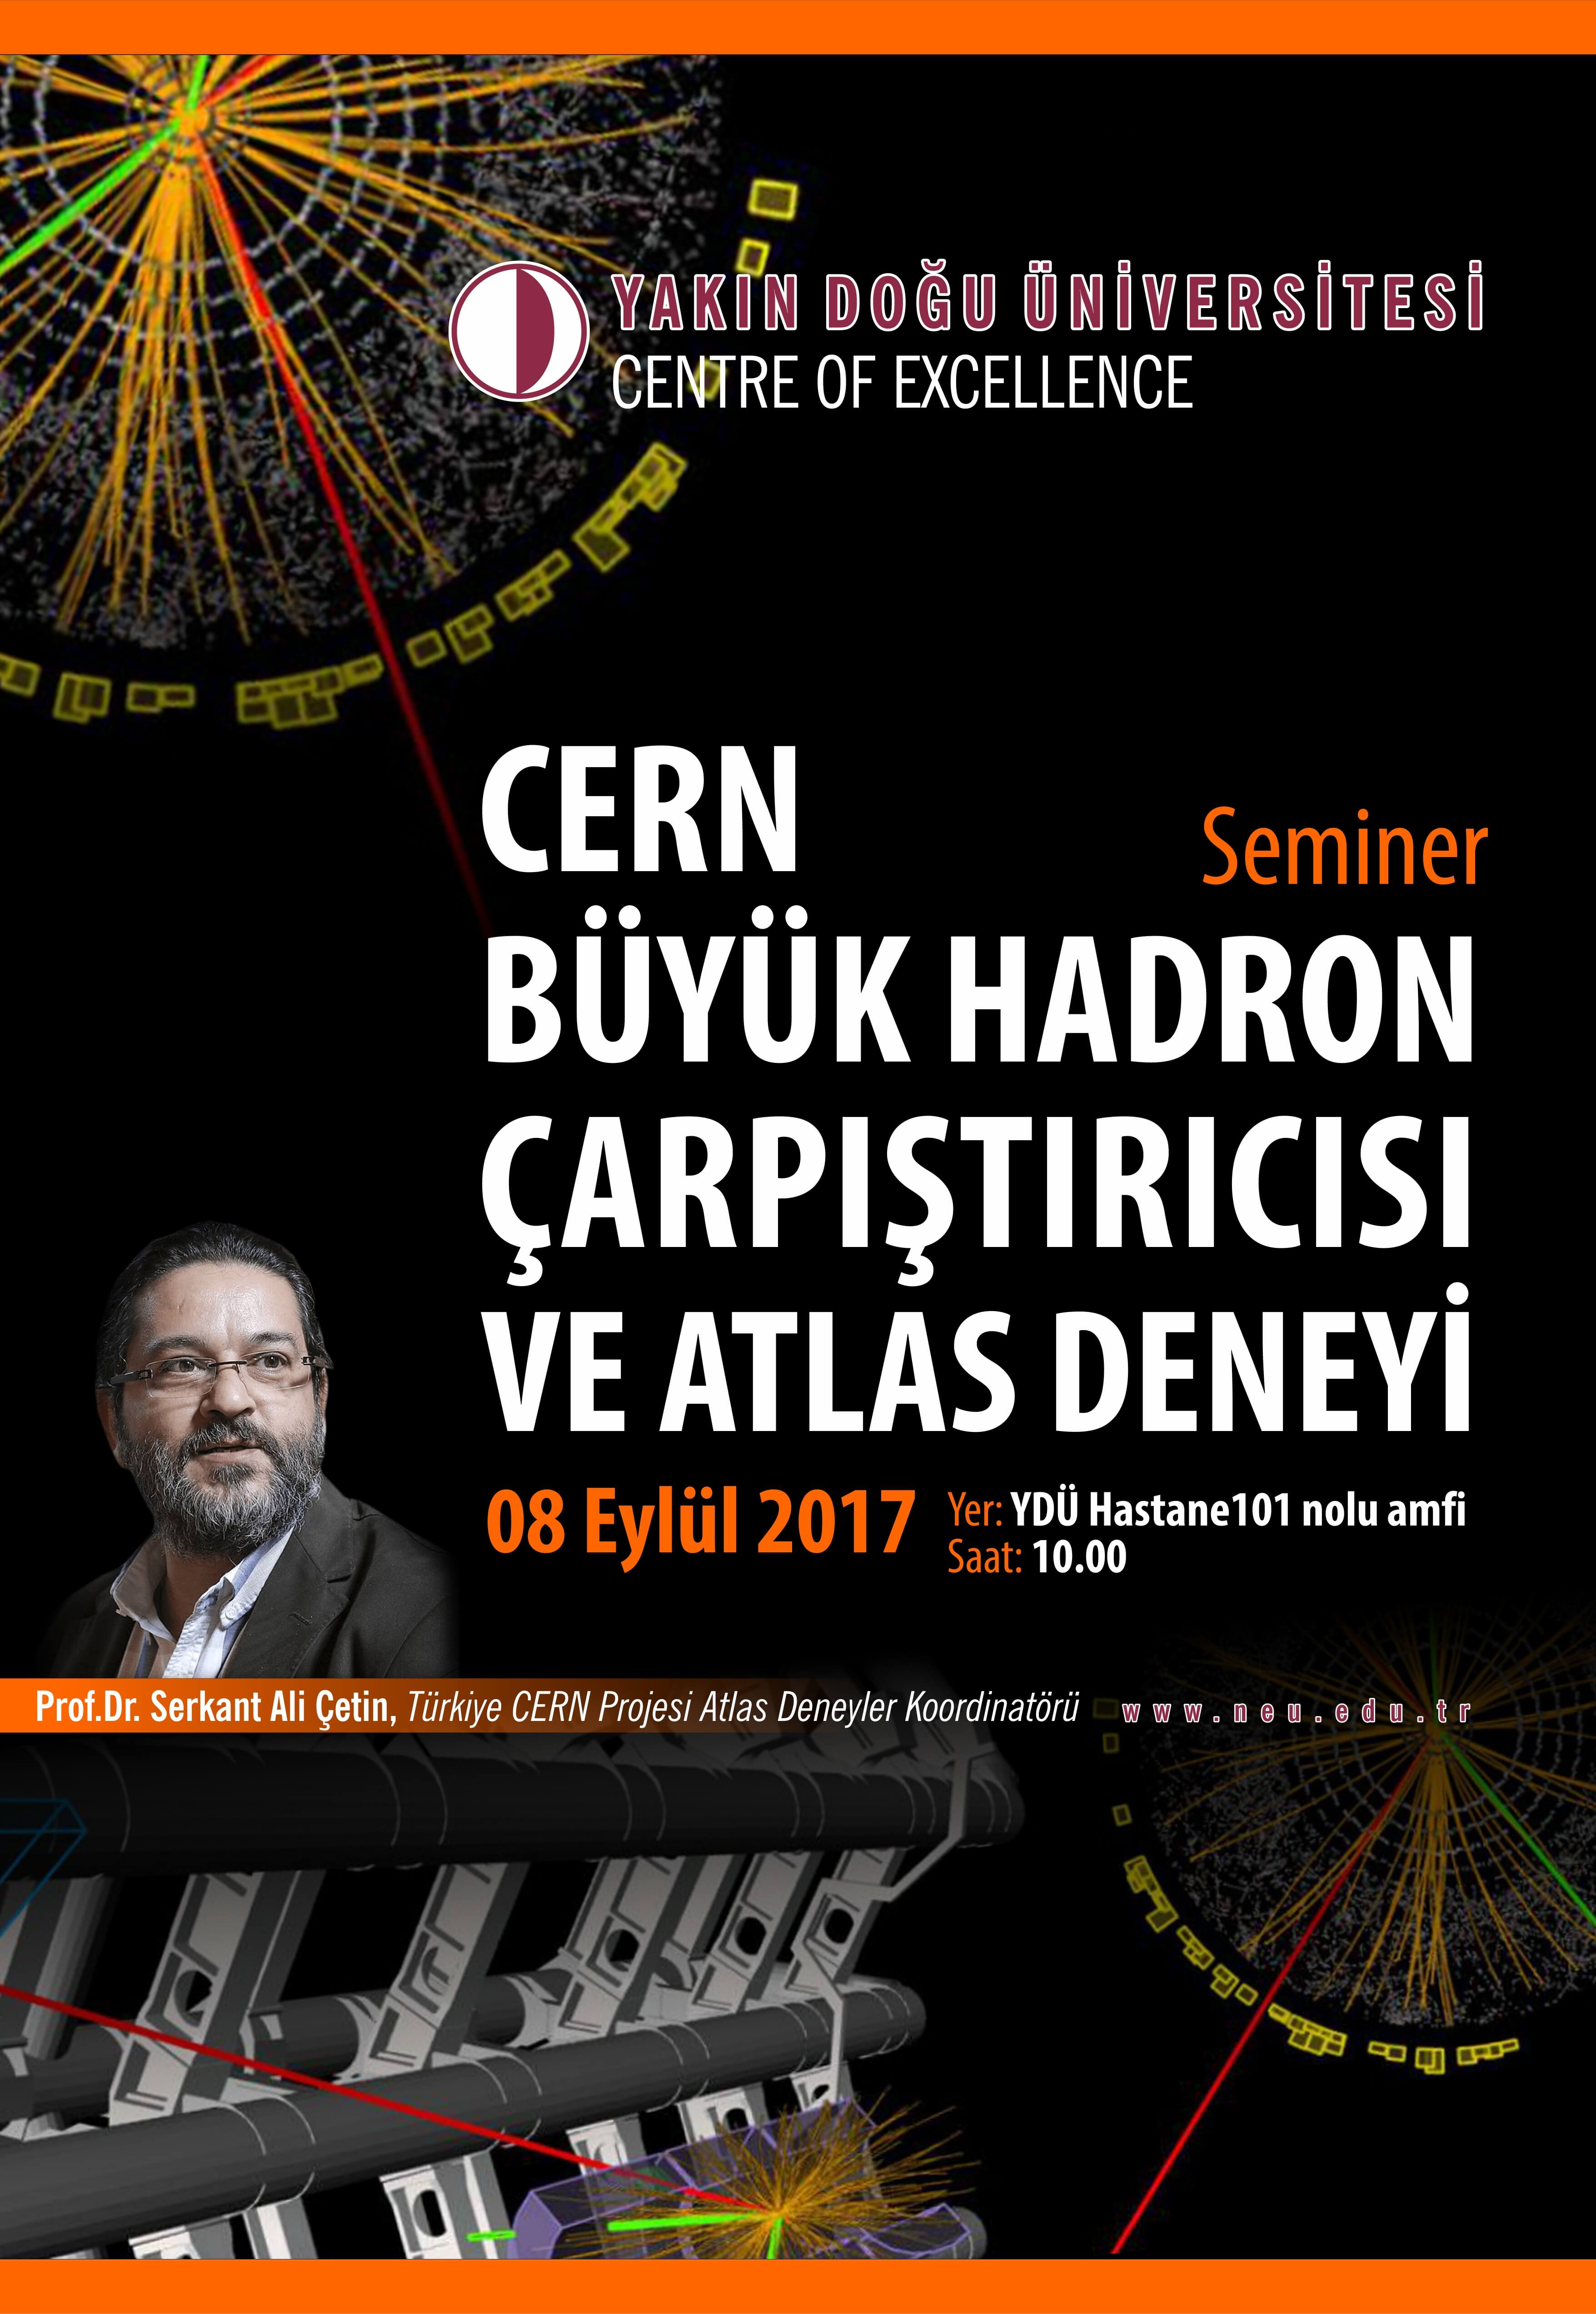 “CERN Büyük Hadron Çarpıştırıcısı ve Atlas Deneyi” Semineri